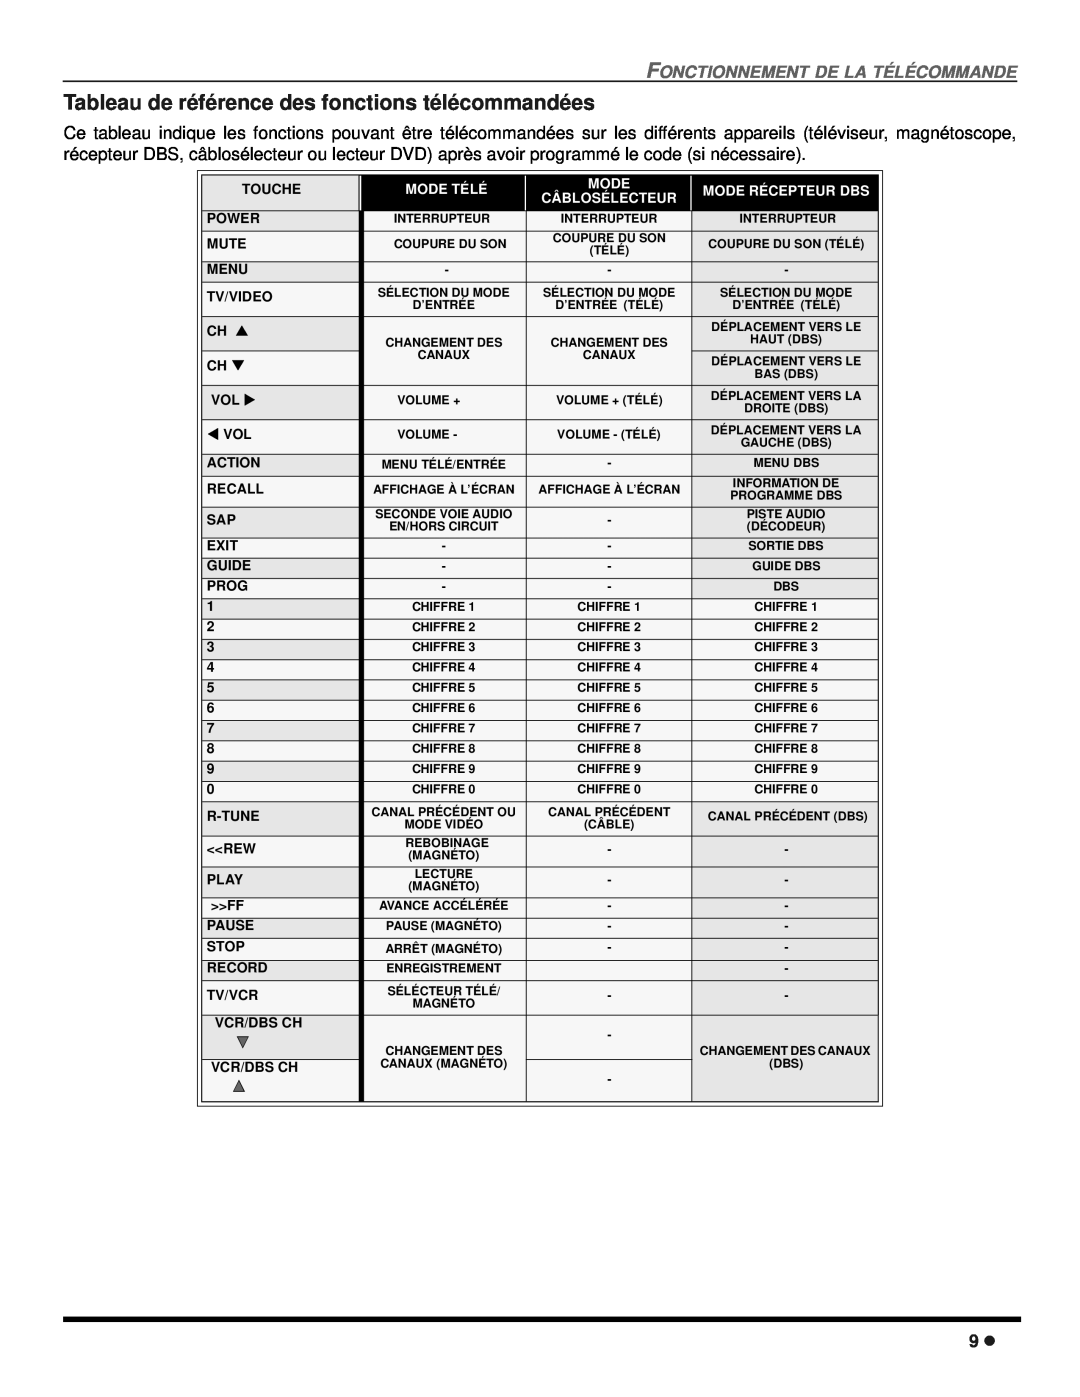 Panasonic CT 24SX12 Tableau de référence des fonctions télécommandées, Fonctionnement De La Télécommande, Mode Télé 